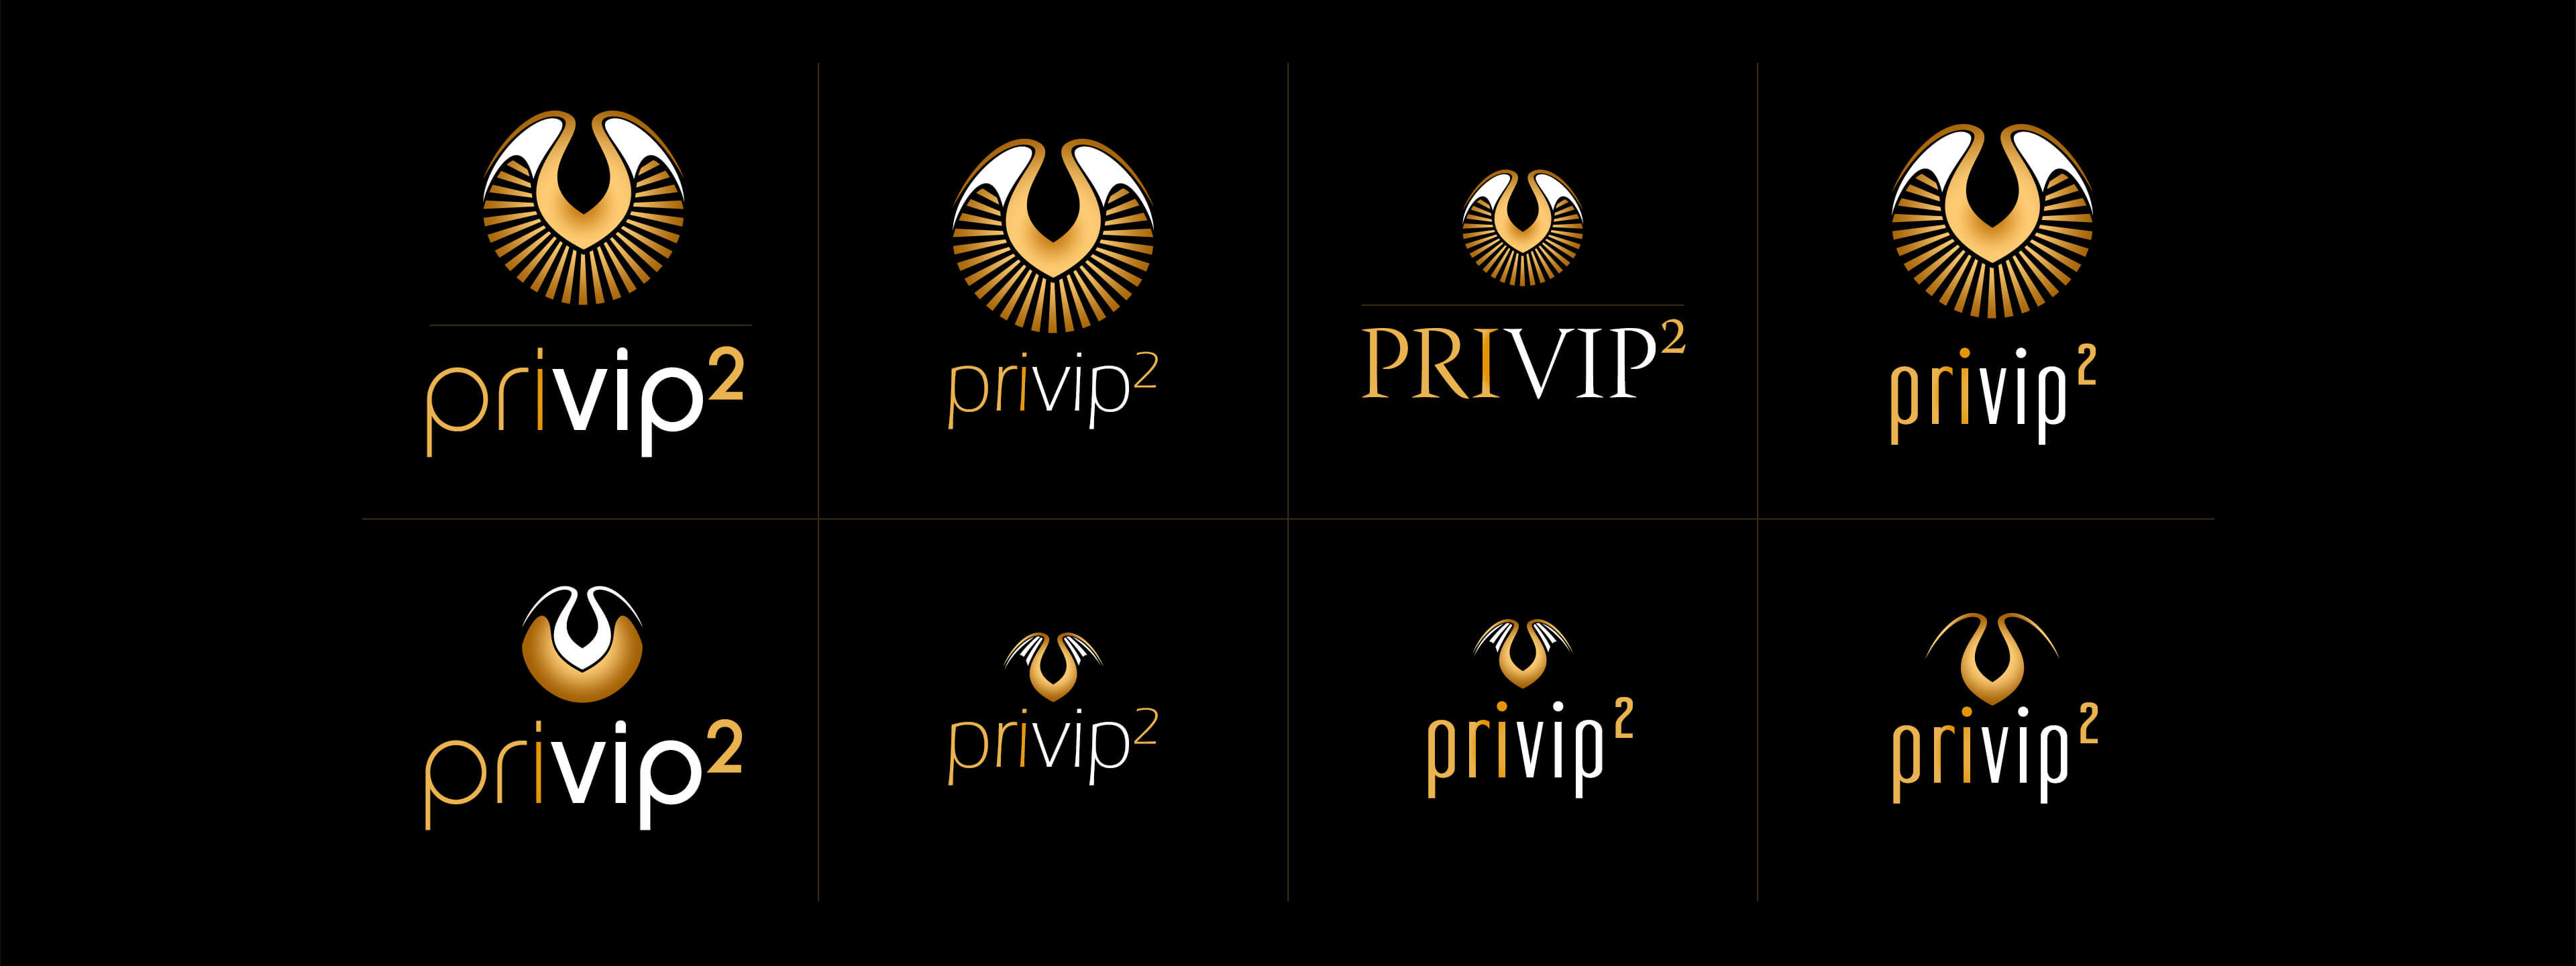 Abbildung privip² Logoentwicklung